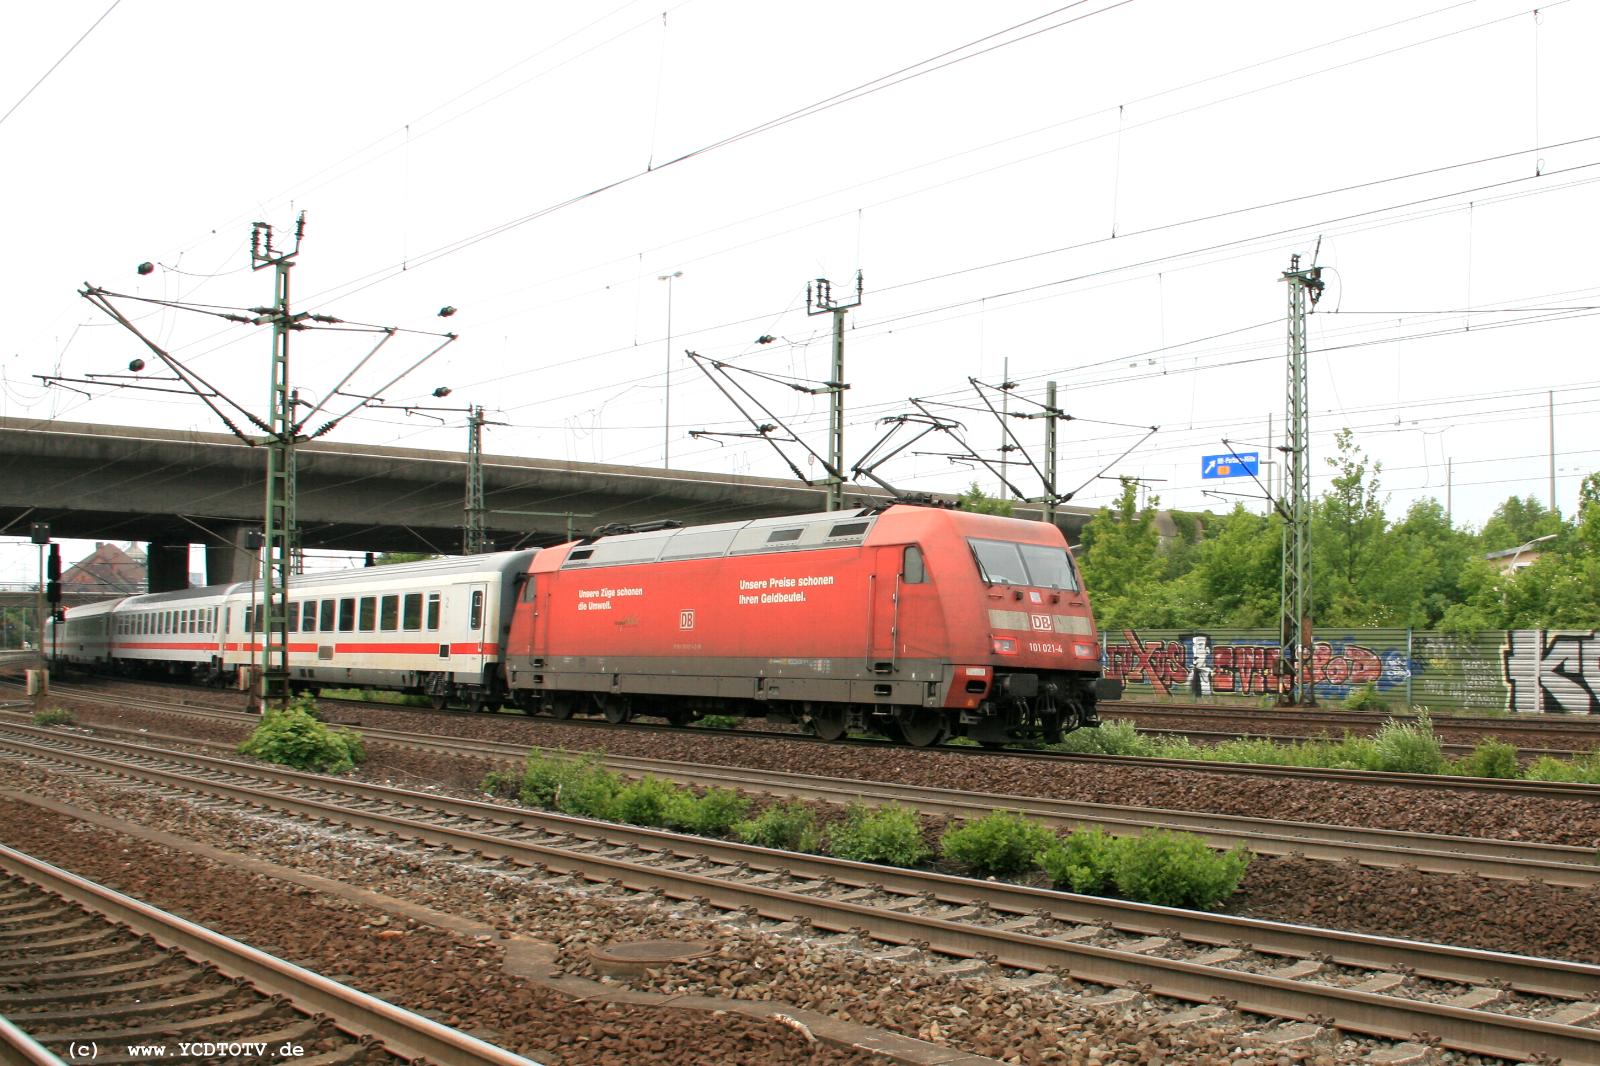  Bahnhof Hamburg-Harburg, 18.05.2011, 15:11 101 021-4 mit IC Richtung Sden 